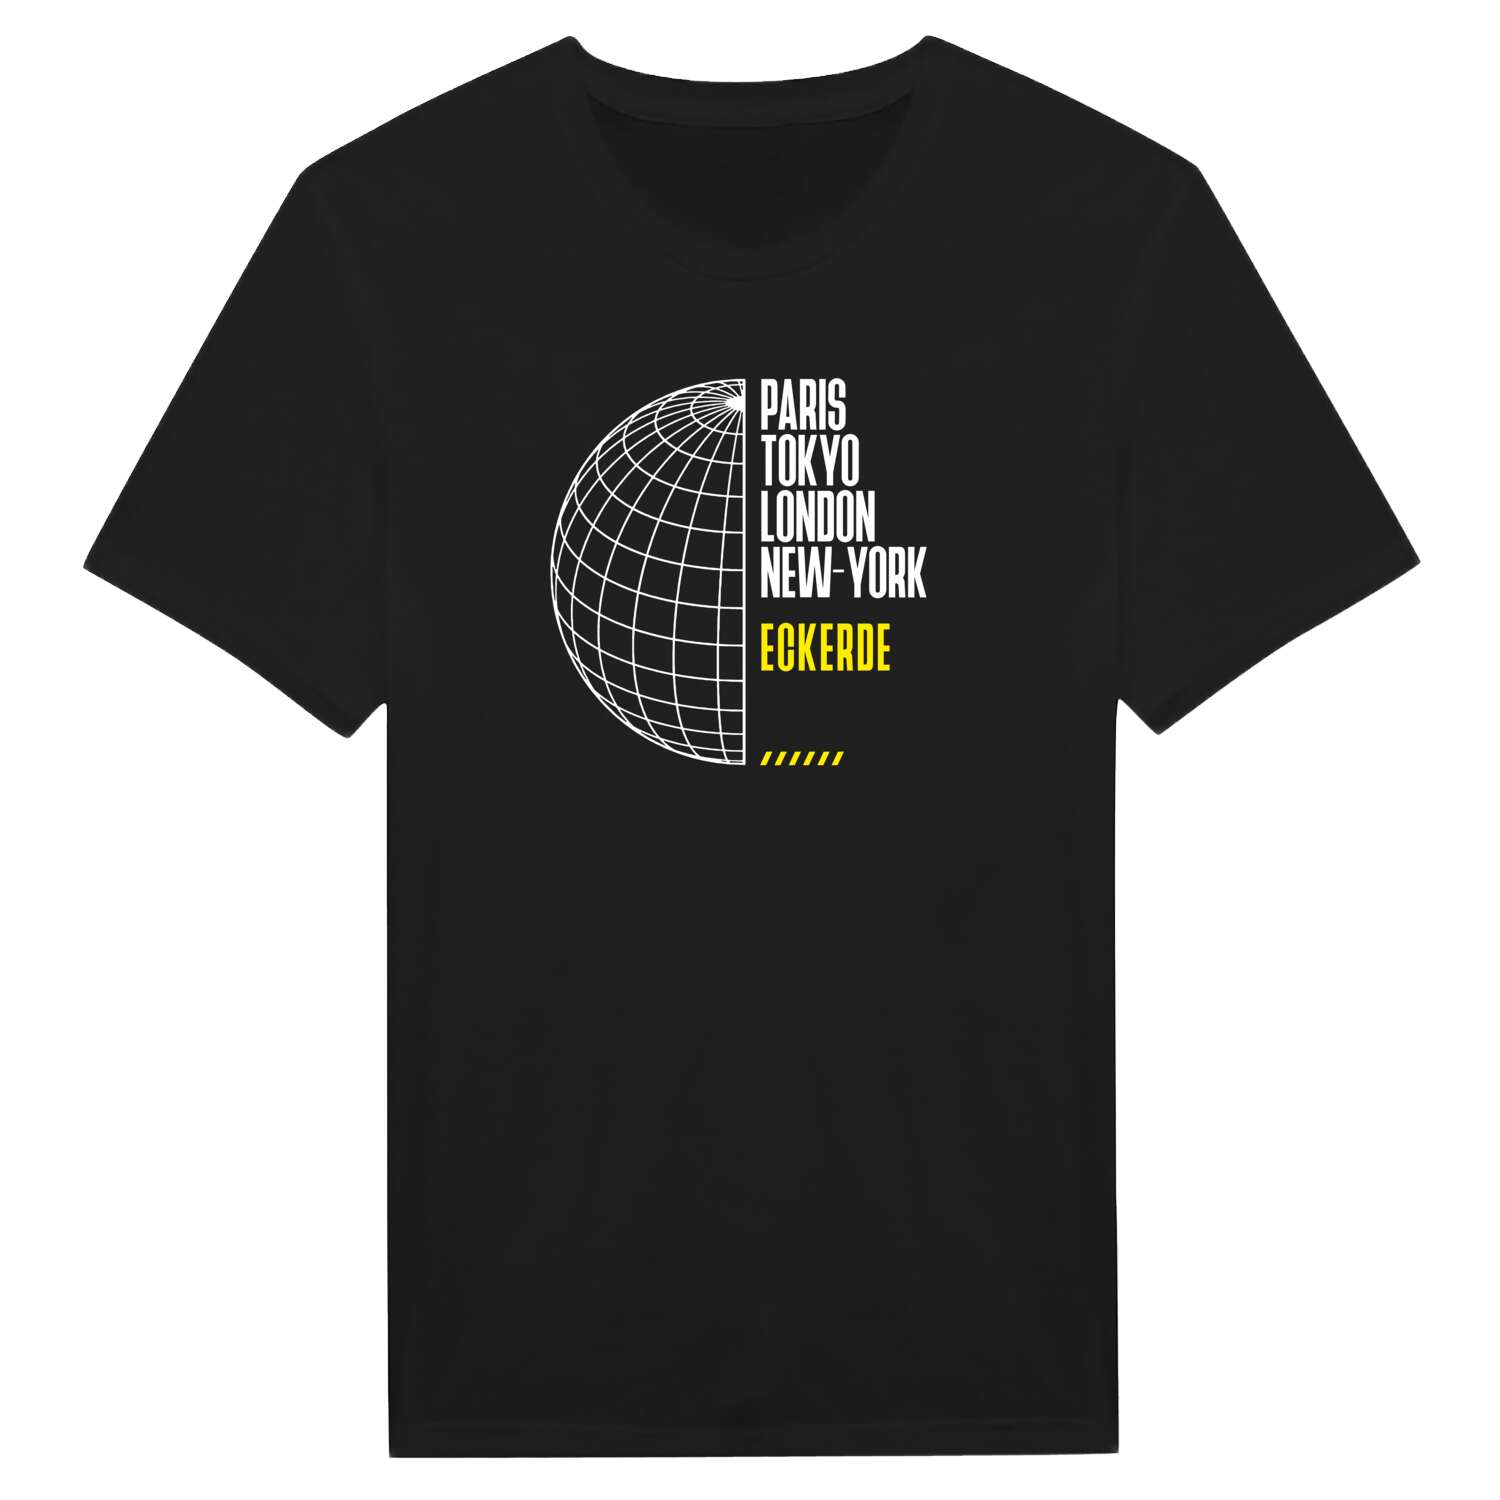 Eckerde T-Shirt »Paris Tokyo London«